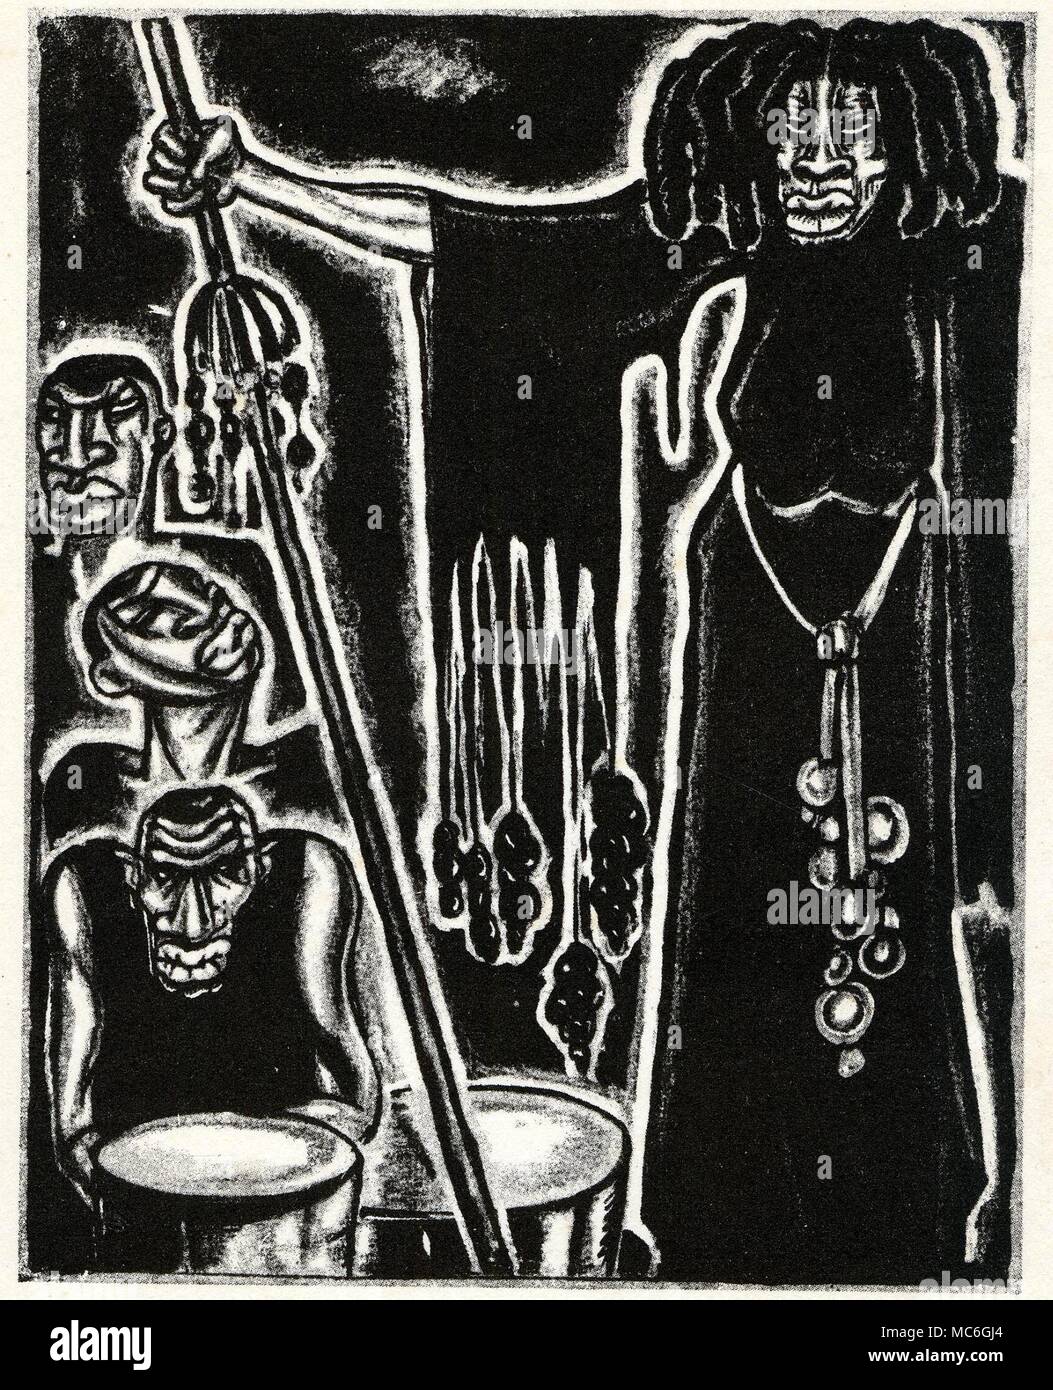 VOODOO - MAMALOI Der mamaloi oder Voodoo Priester, die Teilnahme an einem zeremoniellen Prozessionsweg, in einen Purpurmantel und gefiederten Kopf - Kleid, das Äquivalent eines Derwisch Tanz, als sie den Altar. Abbildung von A.König, bei W.B. Seabrook, die magische Insel, 1929. Stockfoto